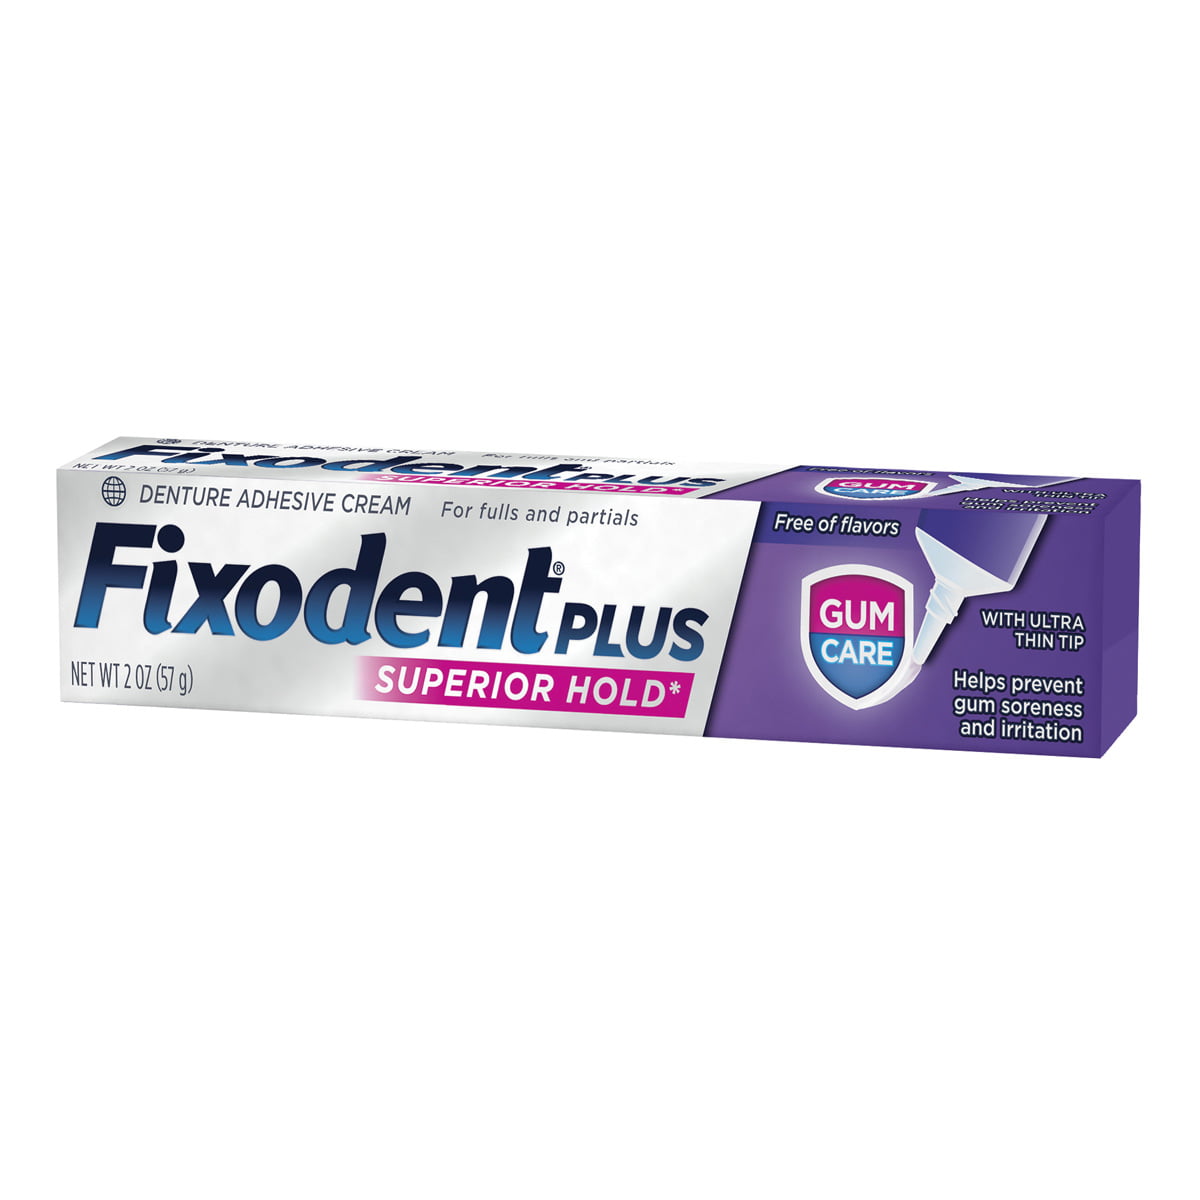  Fixodent Plus Gum Care 57g - Adesivo Dentário para Próteses Dentárias 